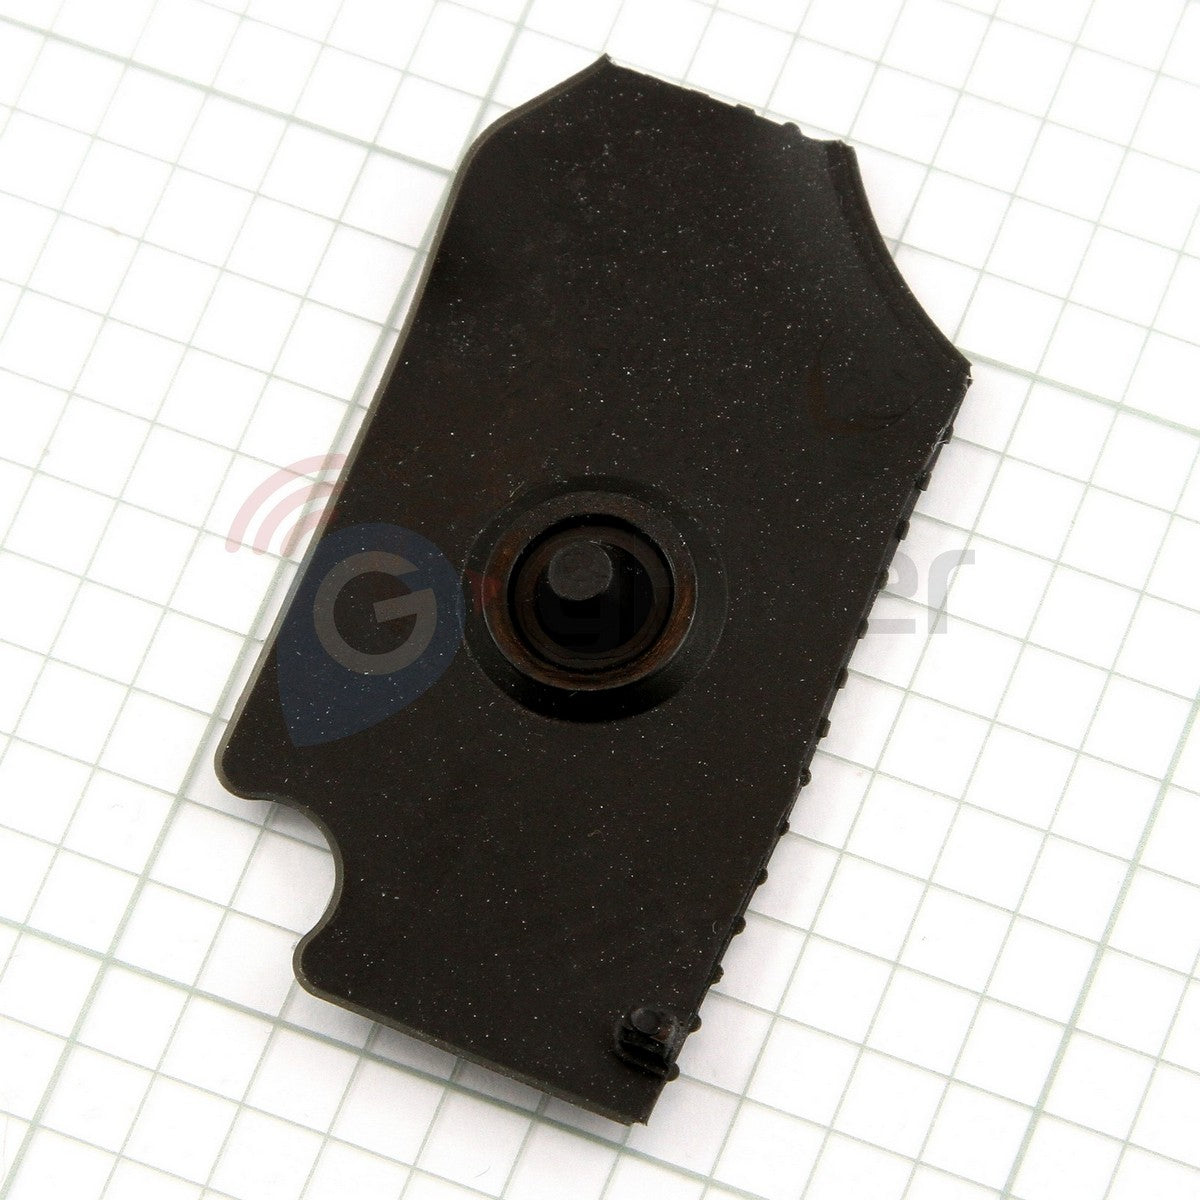 Rubber power button for Garmin Dezl 570 replacement case part